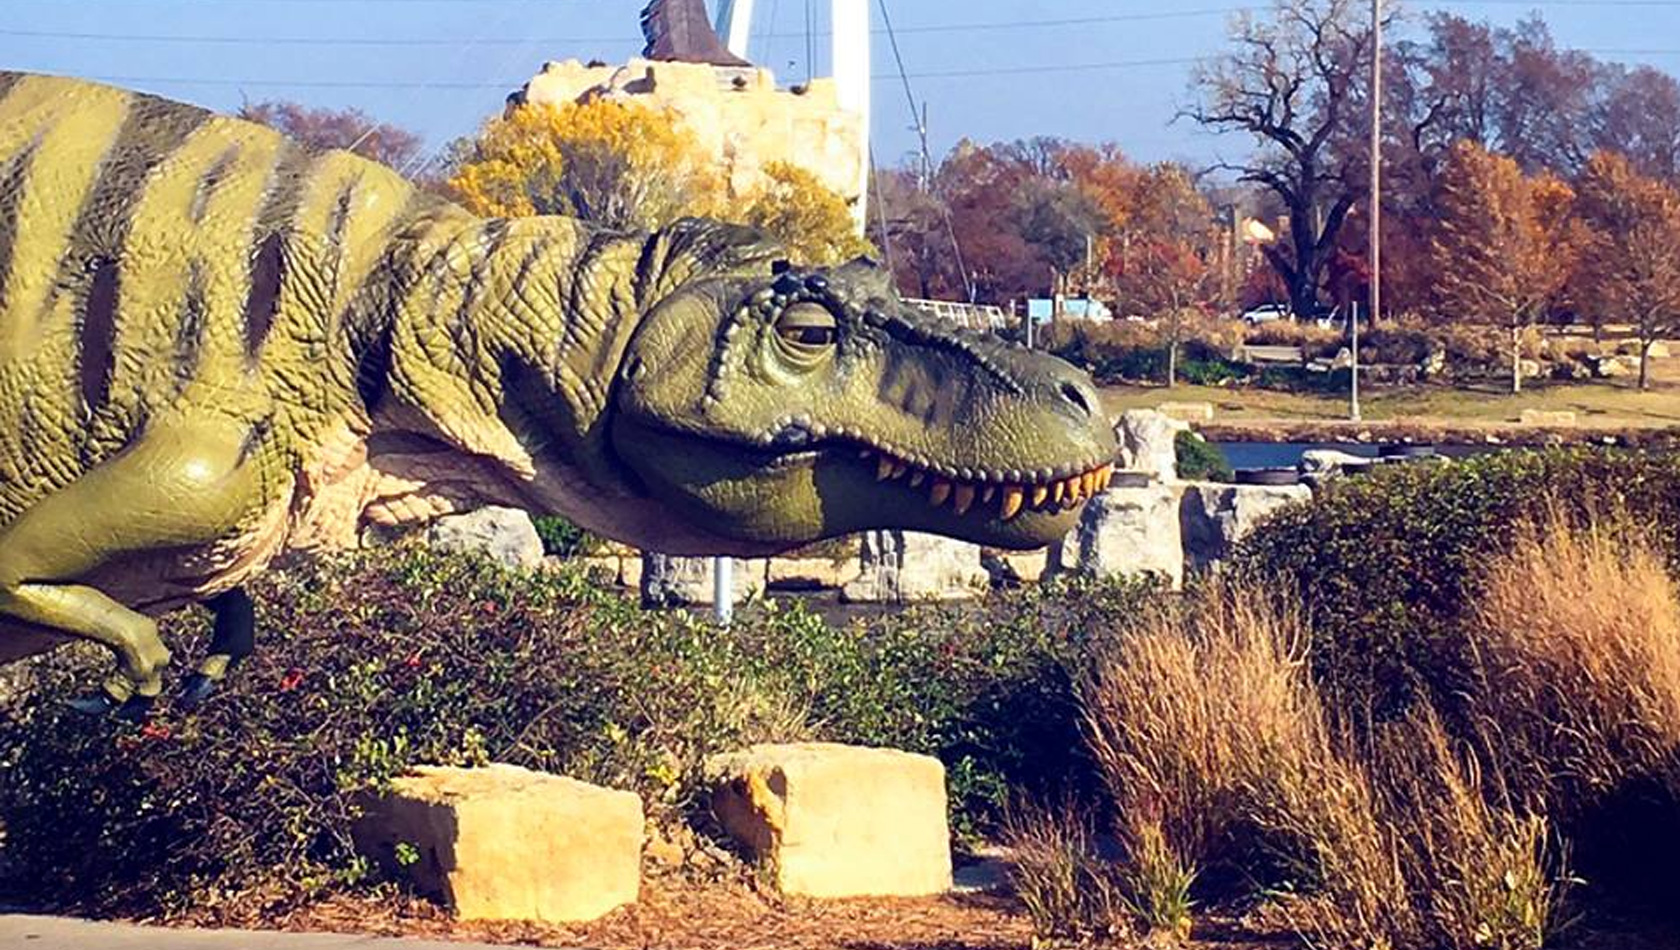 Dinosaurier-Modell Field Station Dinosaur Kansas